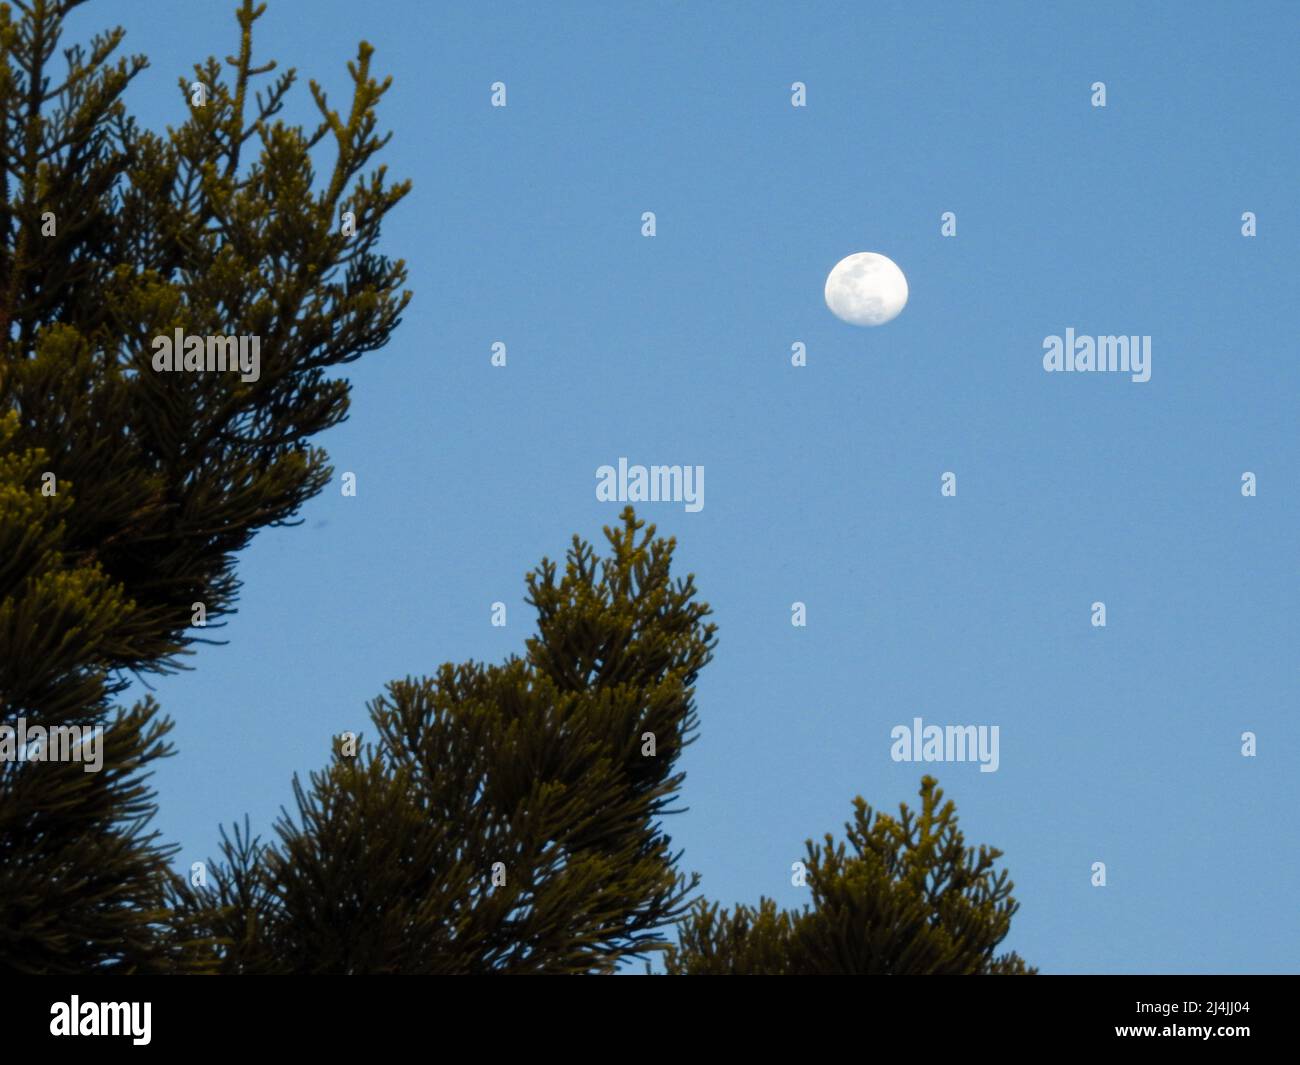 Un disparo de gran angular de un cielo azul con luna y un árbol en primer plano. Foto de stock